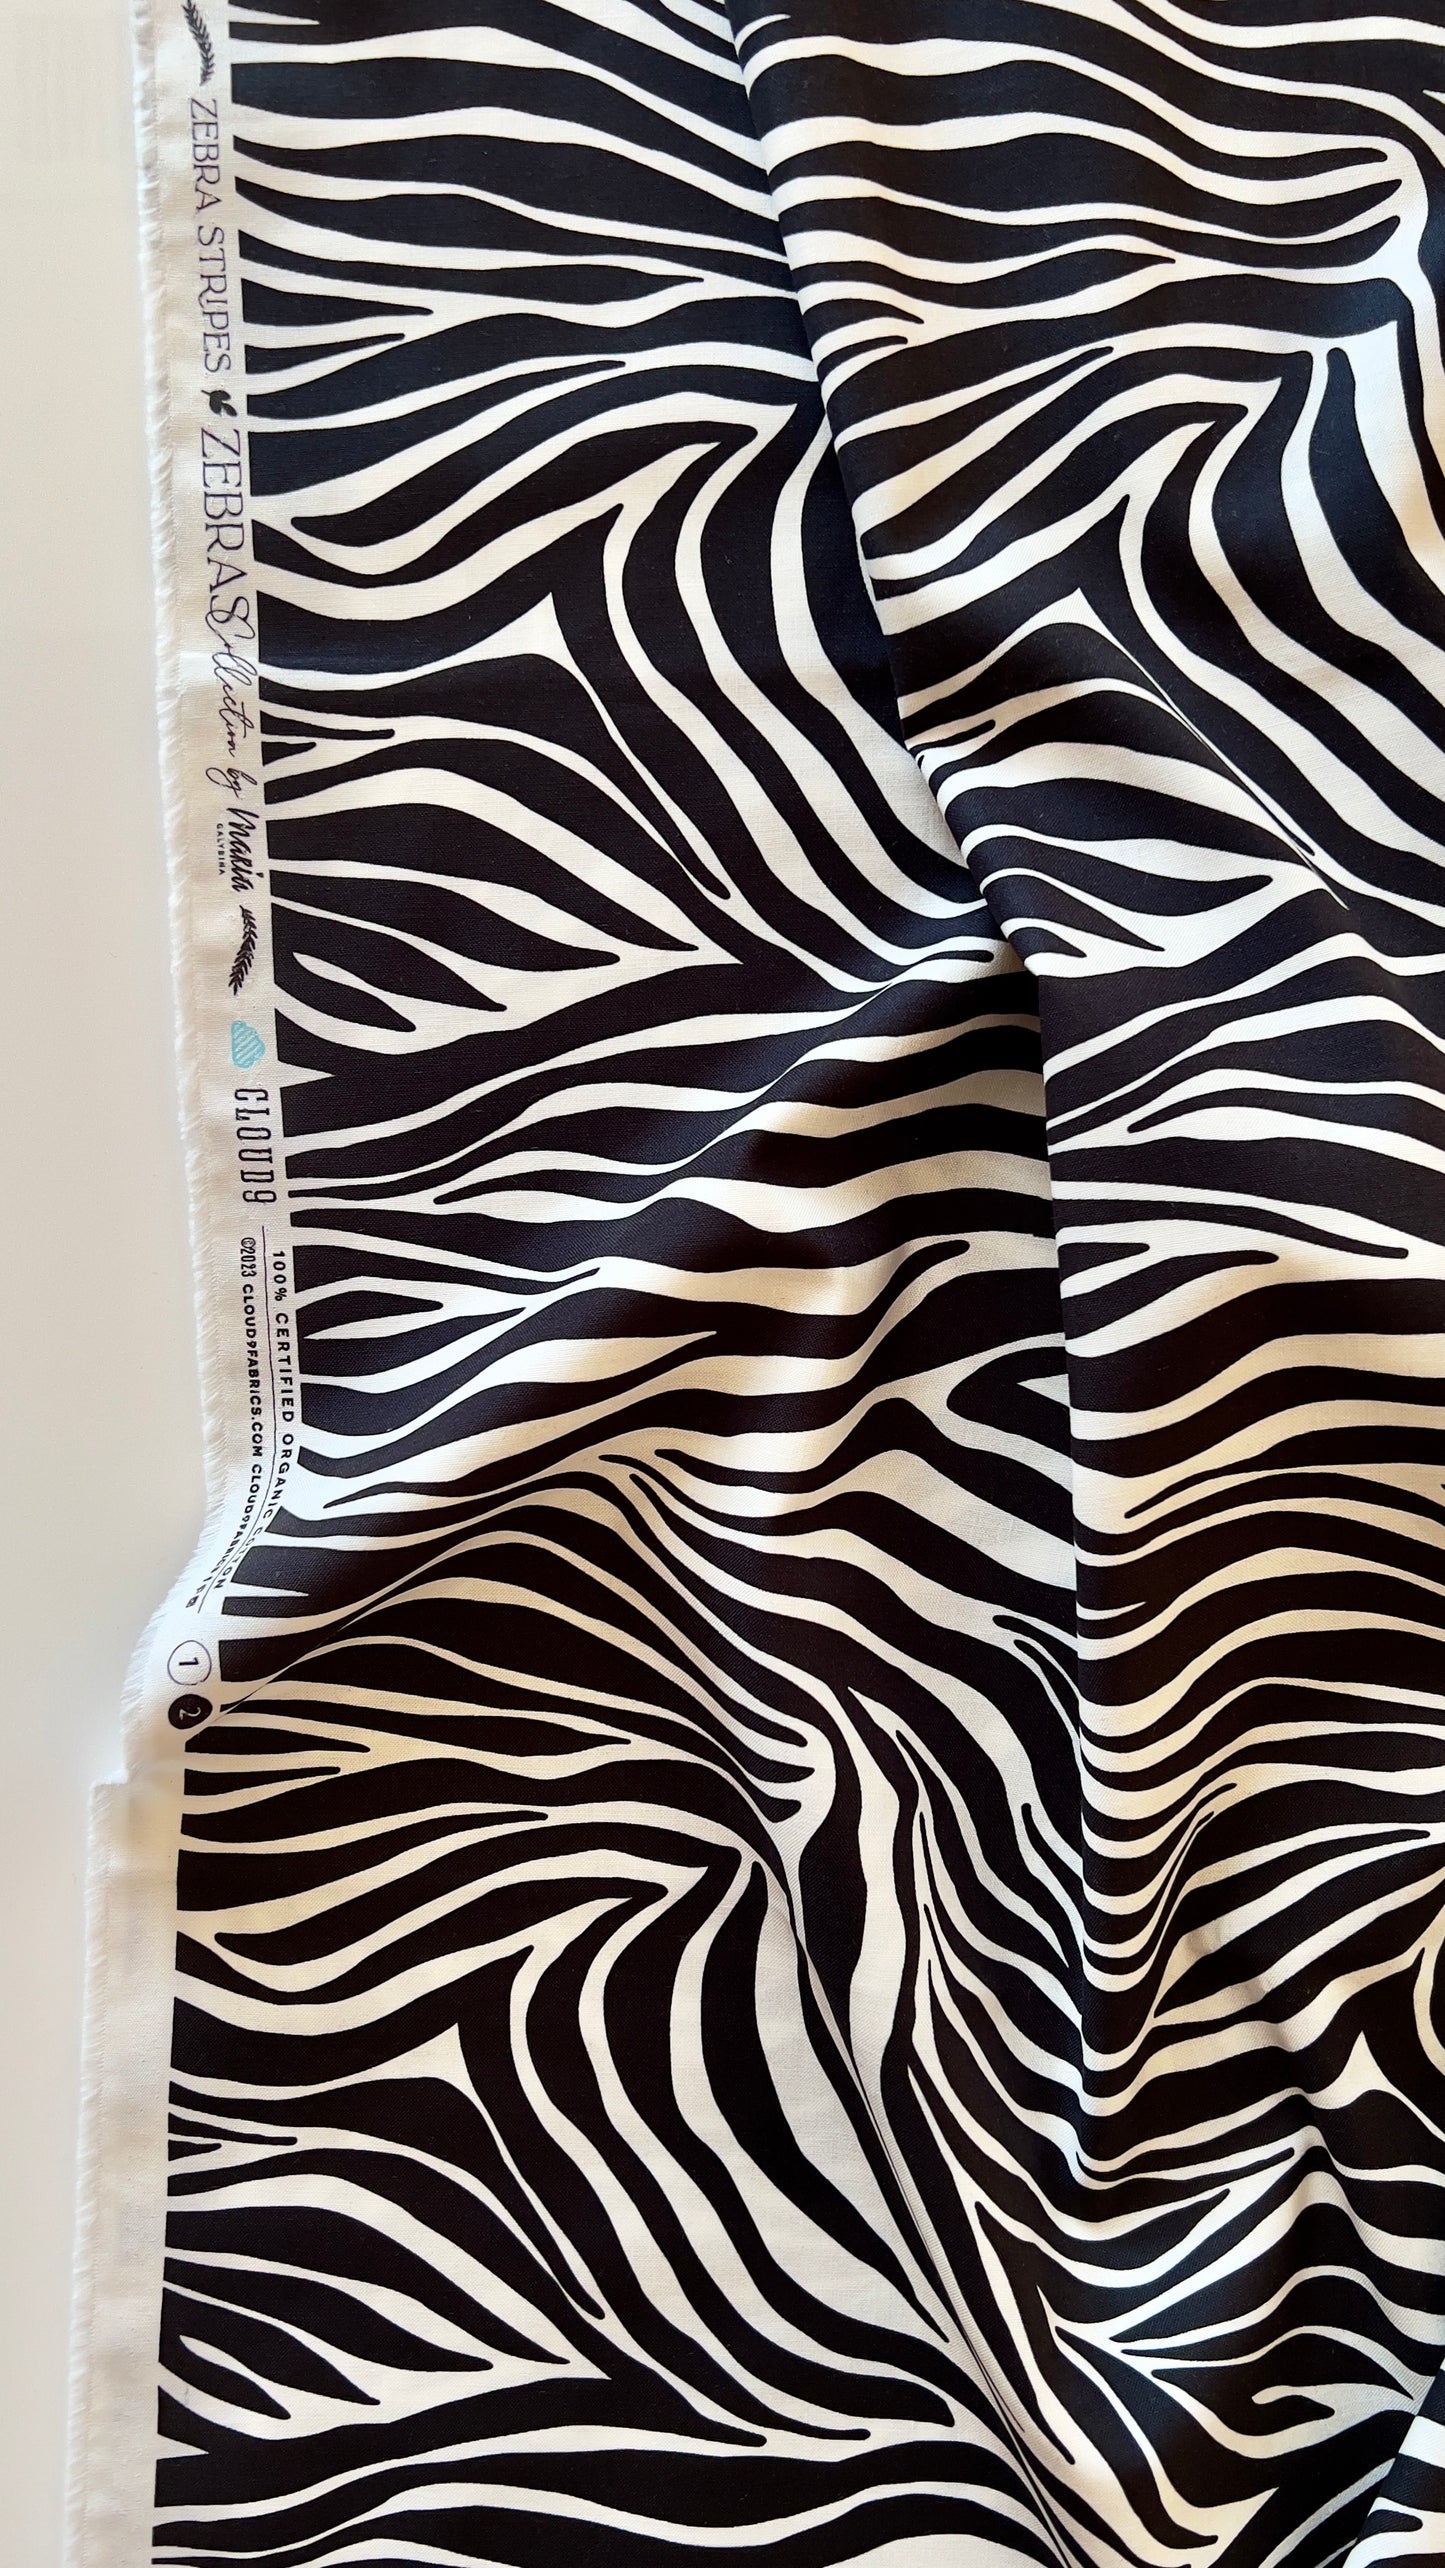 Zebras - Zebra Stripes in Black